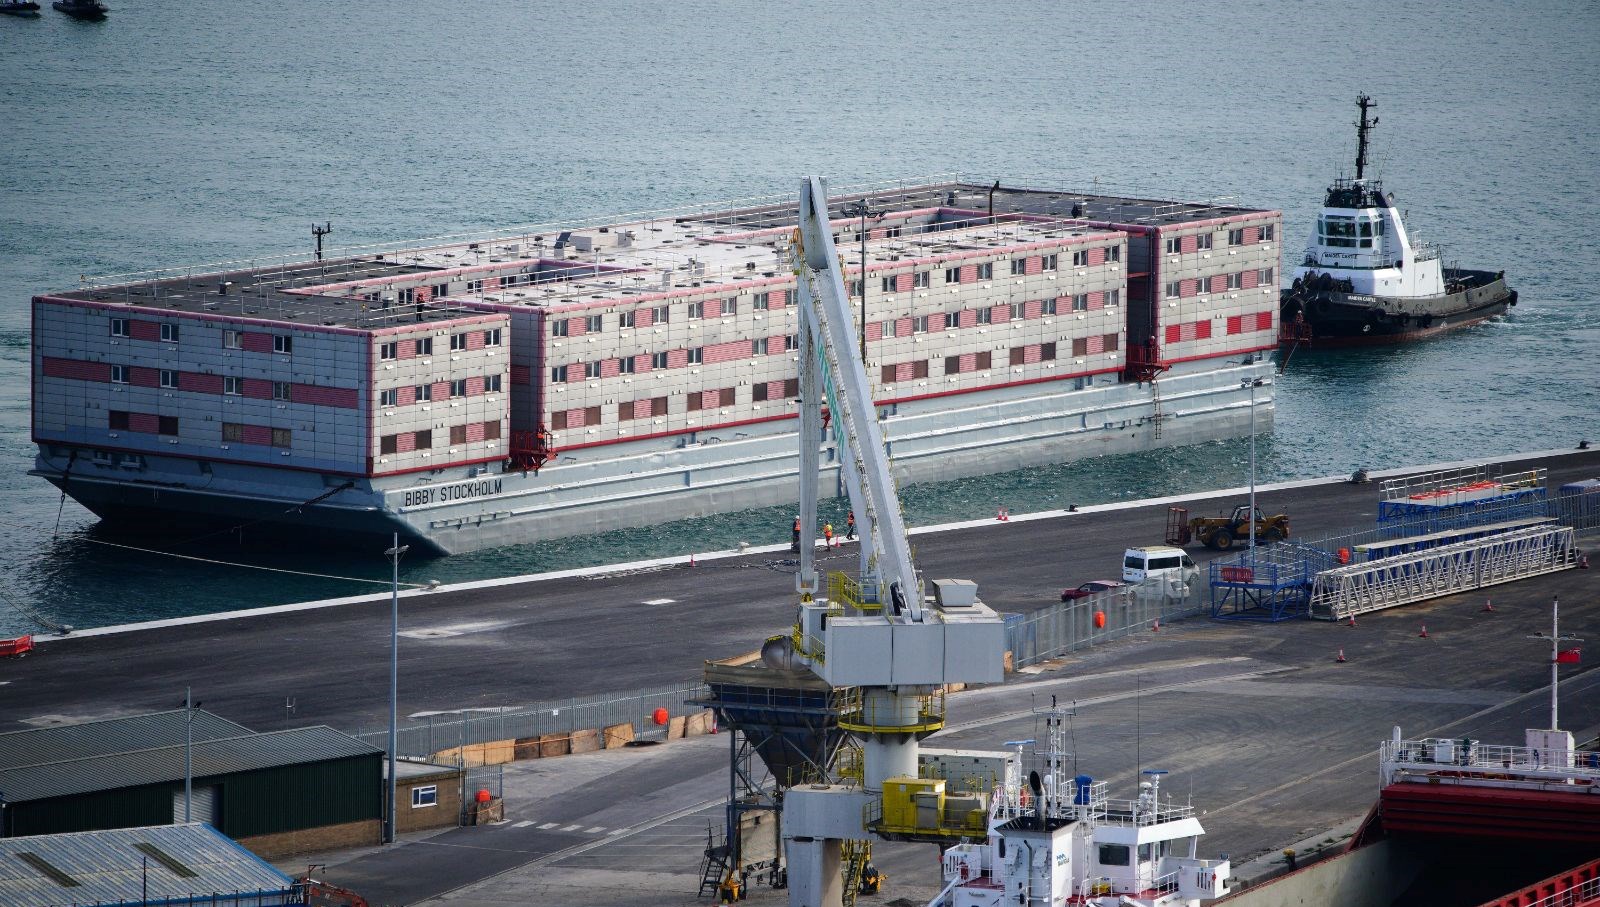 İngiltere’de sığınmacıların barındırılacağı dev gemi için “yüzen hapishane” eleştirisi